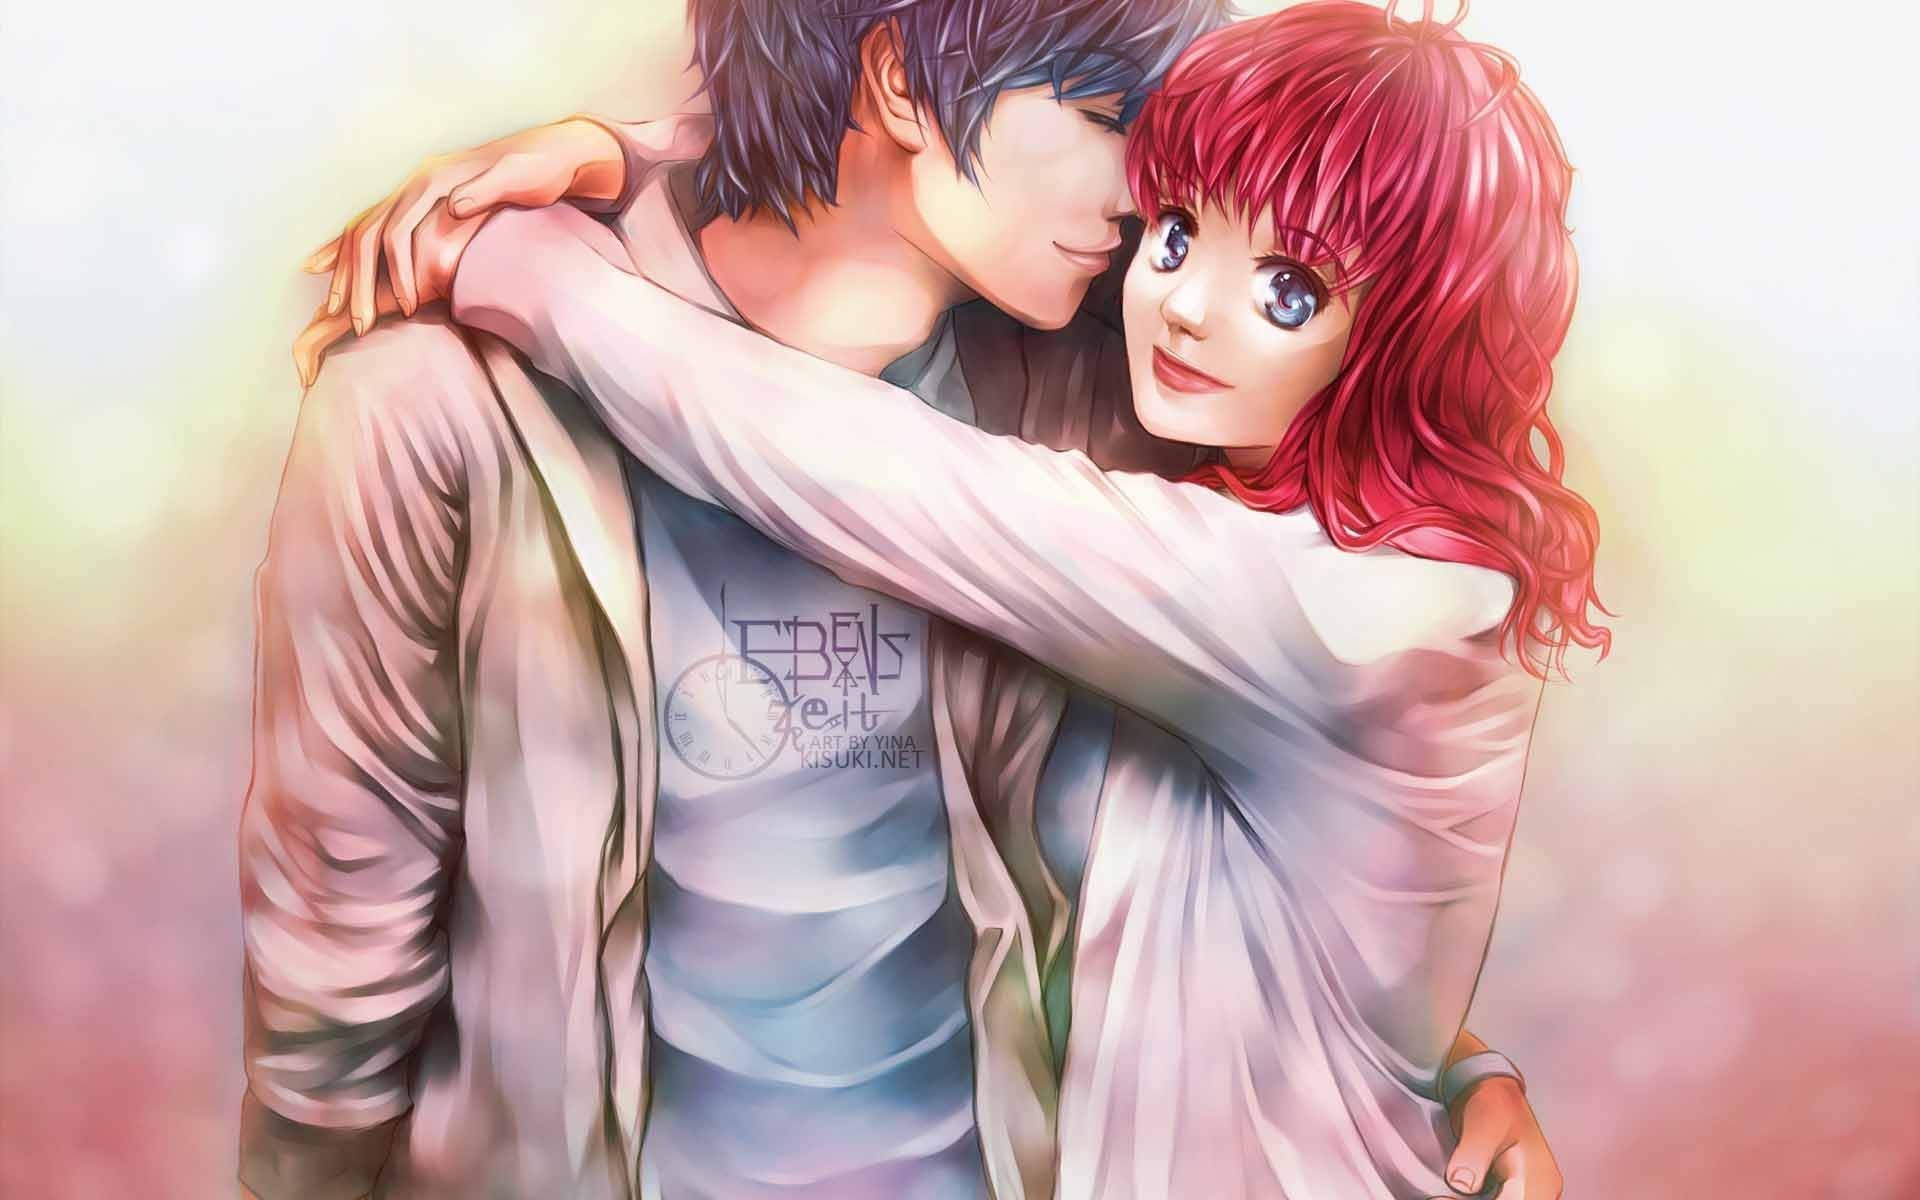 Anime Hug Boy And Girl With Jacket Background